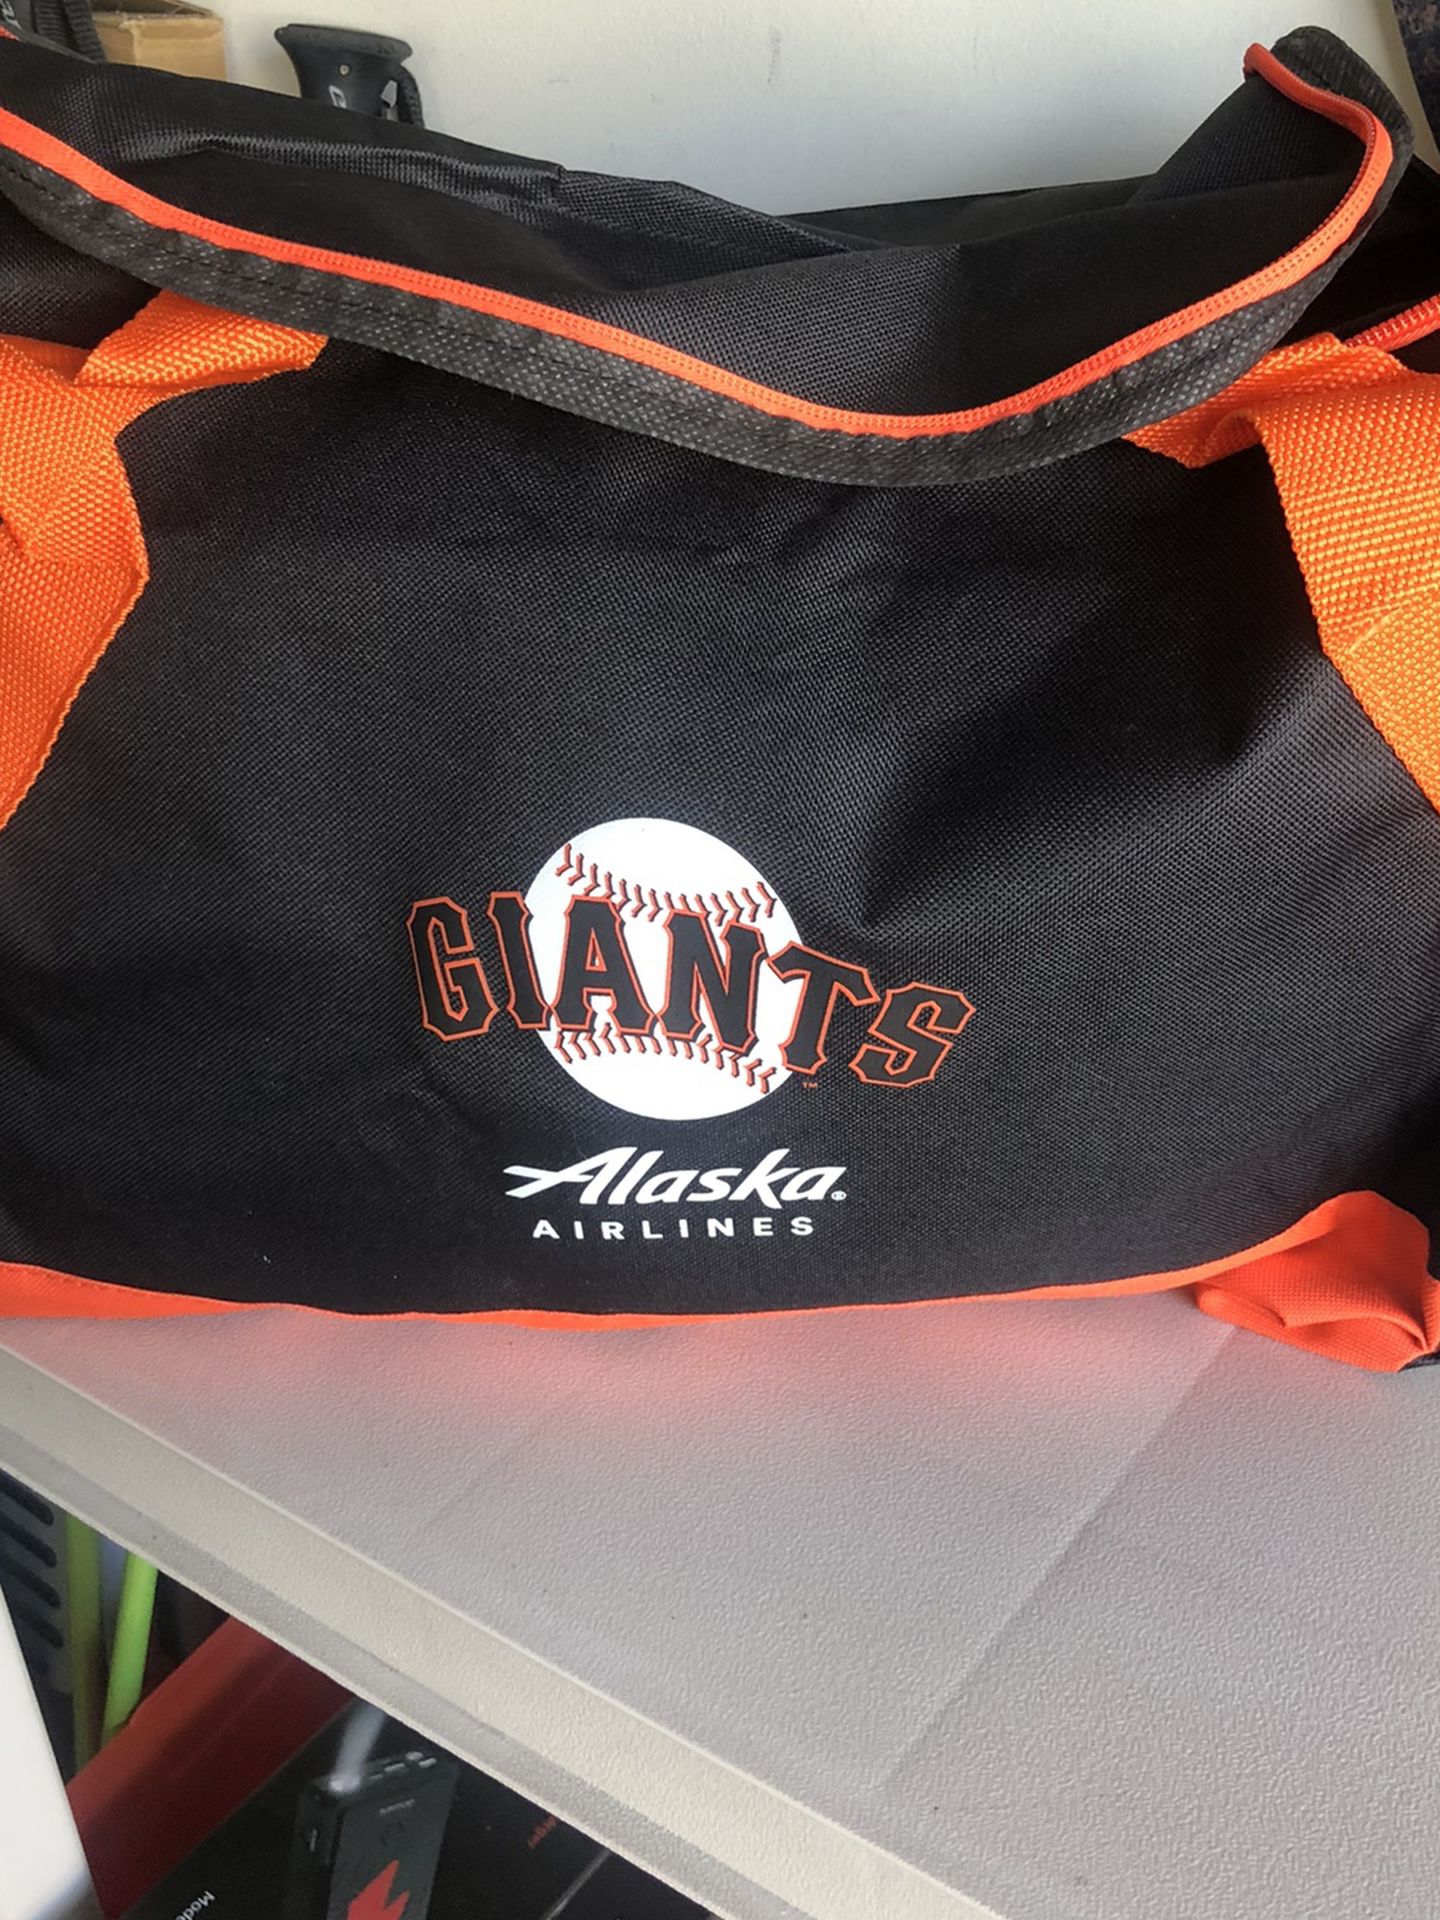 Giants Duffle Bag